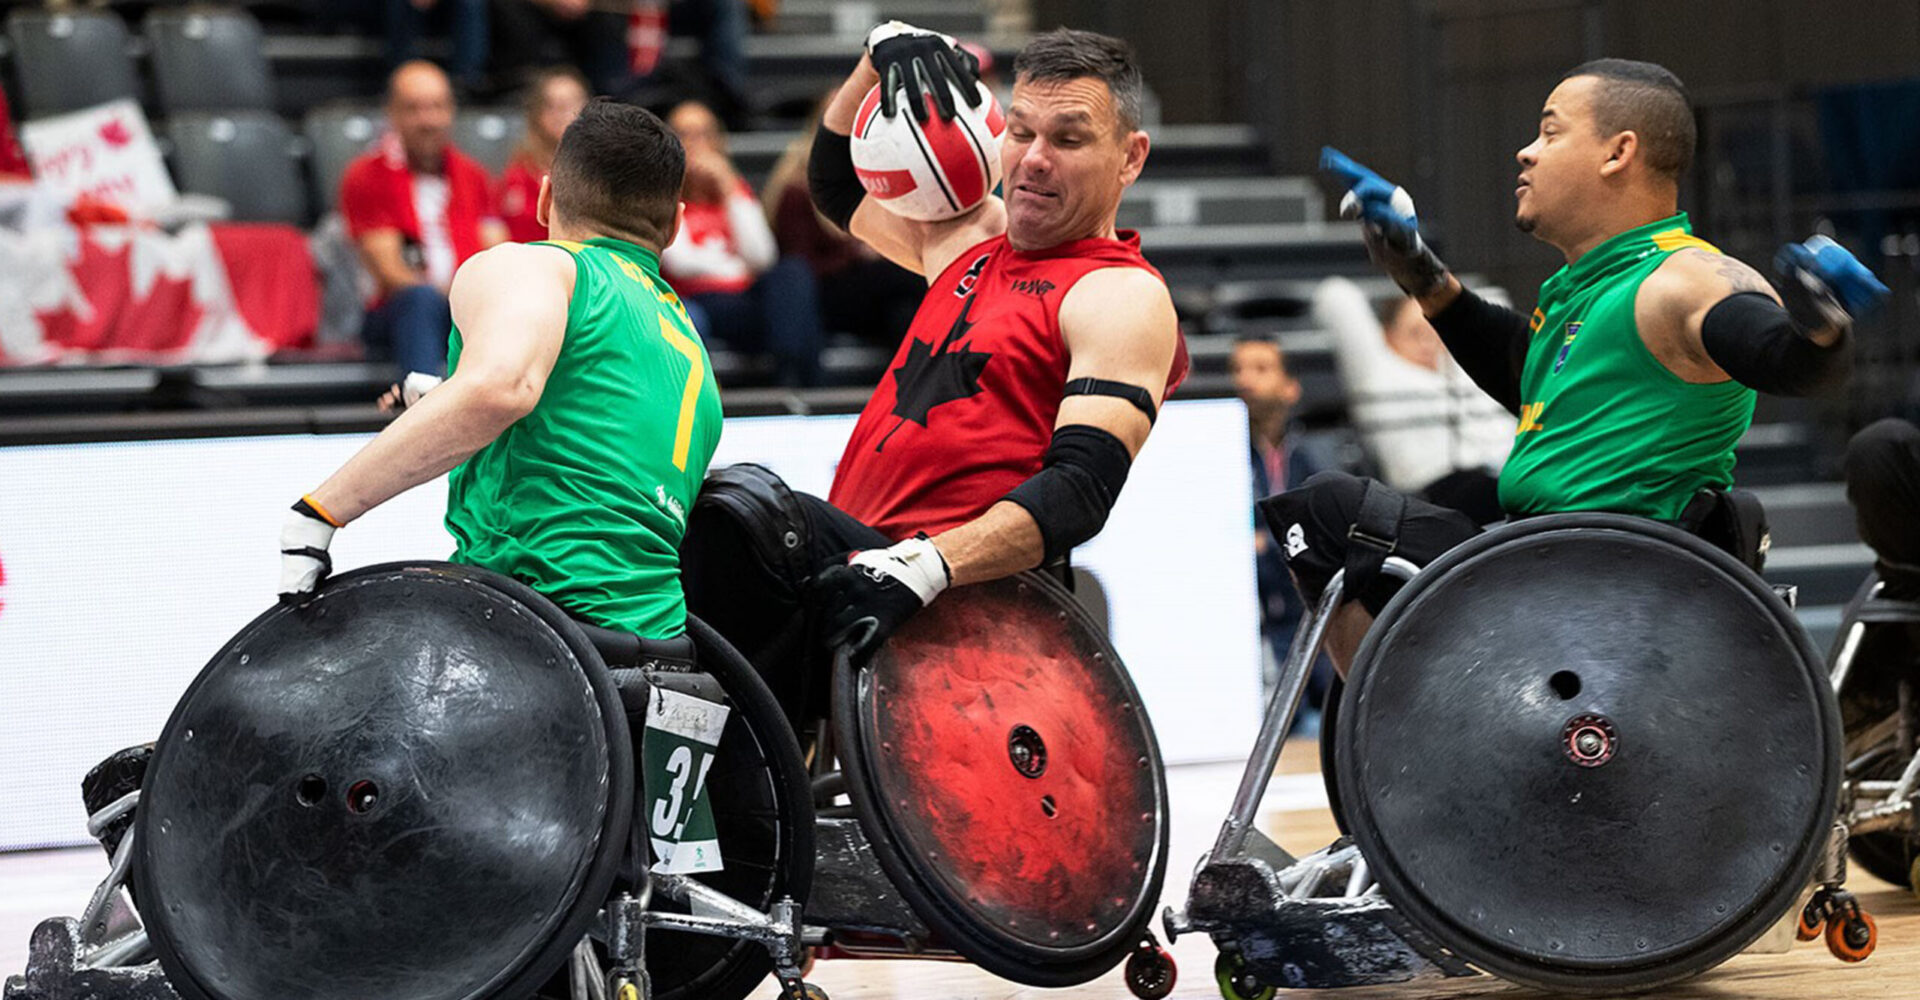 Le canada se qualifie pour les séries éliminatoires du championnat du monde de rugby en fauteuil roulant de 2022